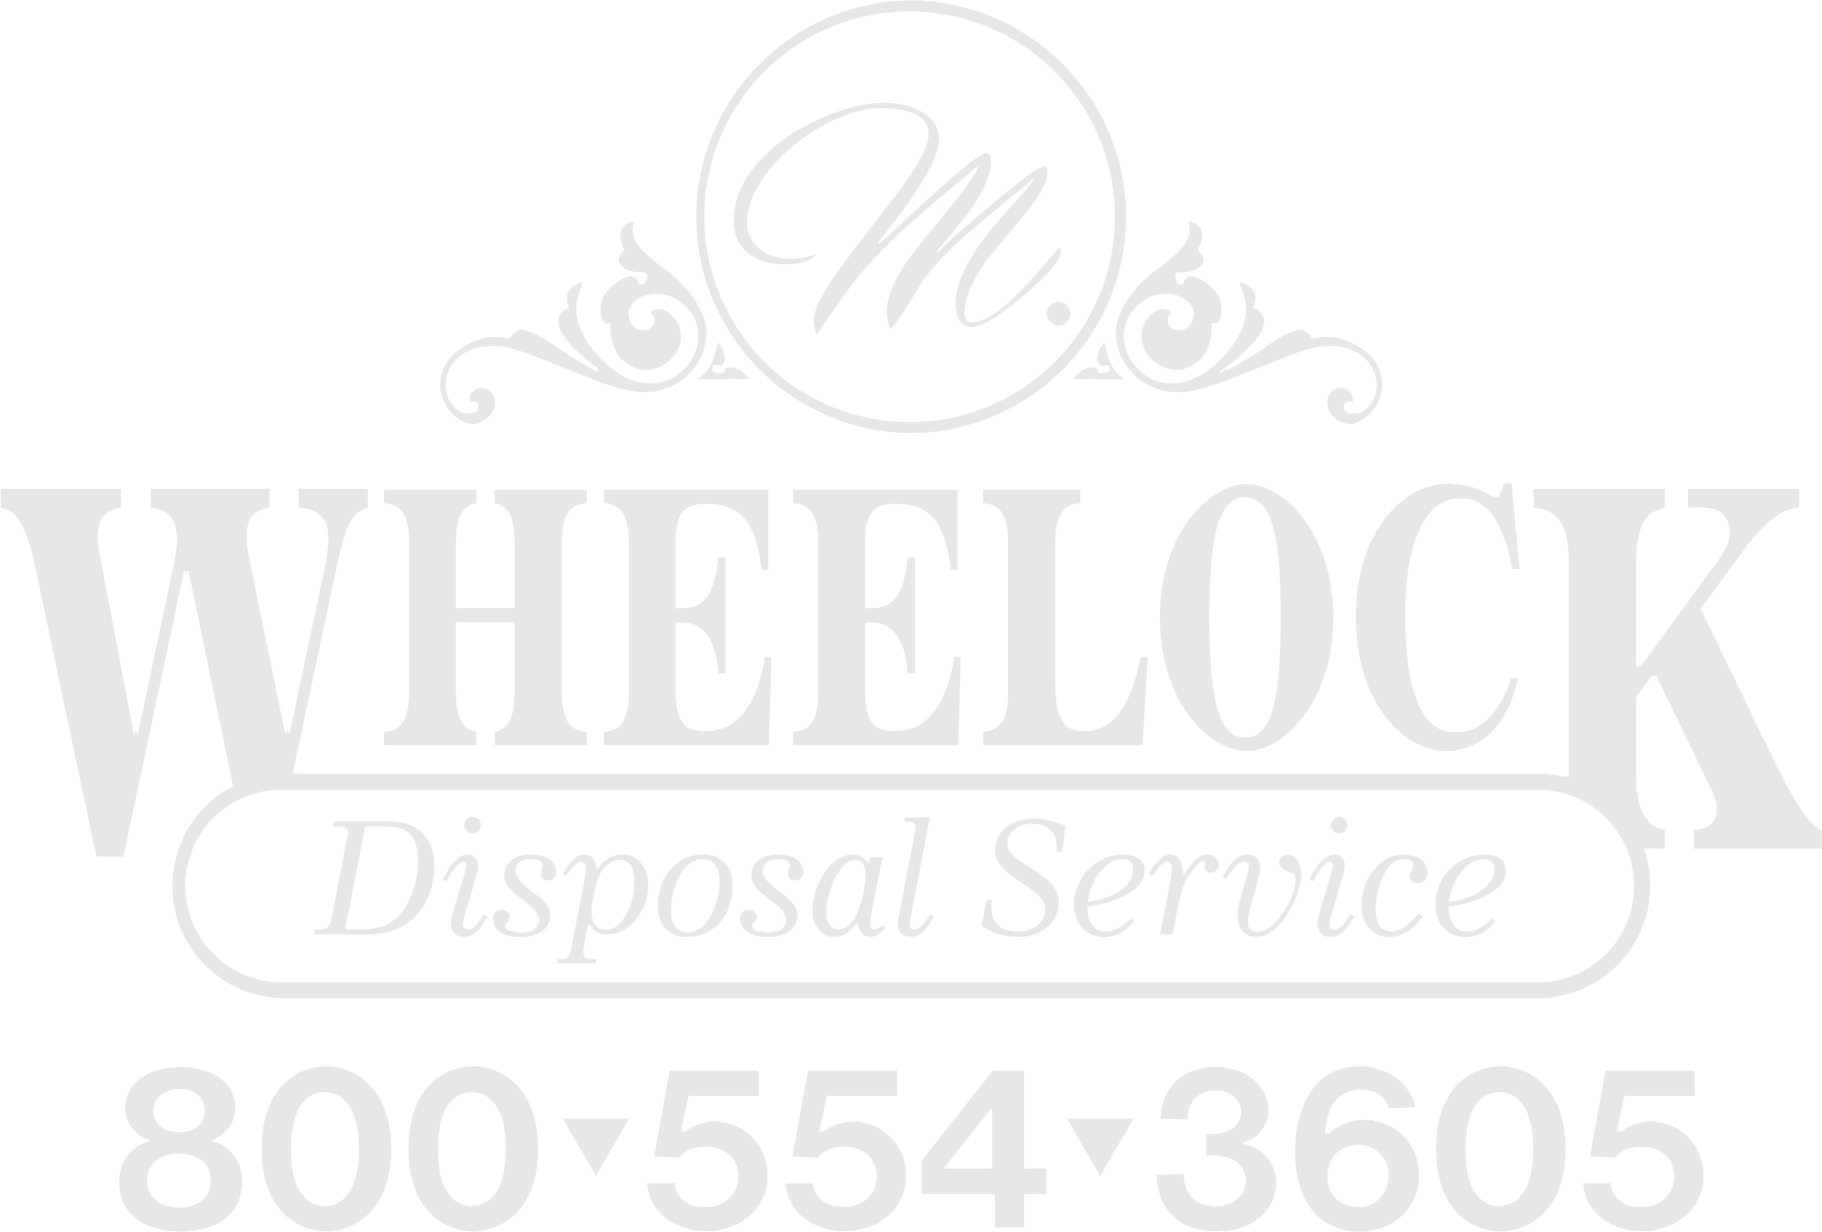 Wheelock White Logo